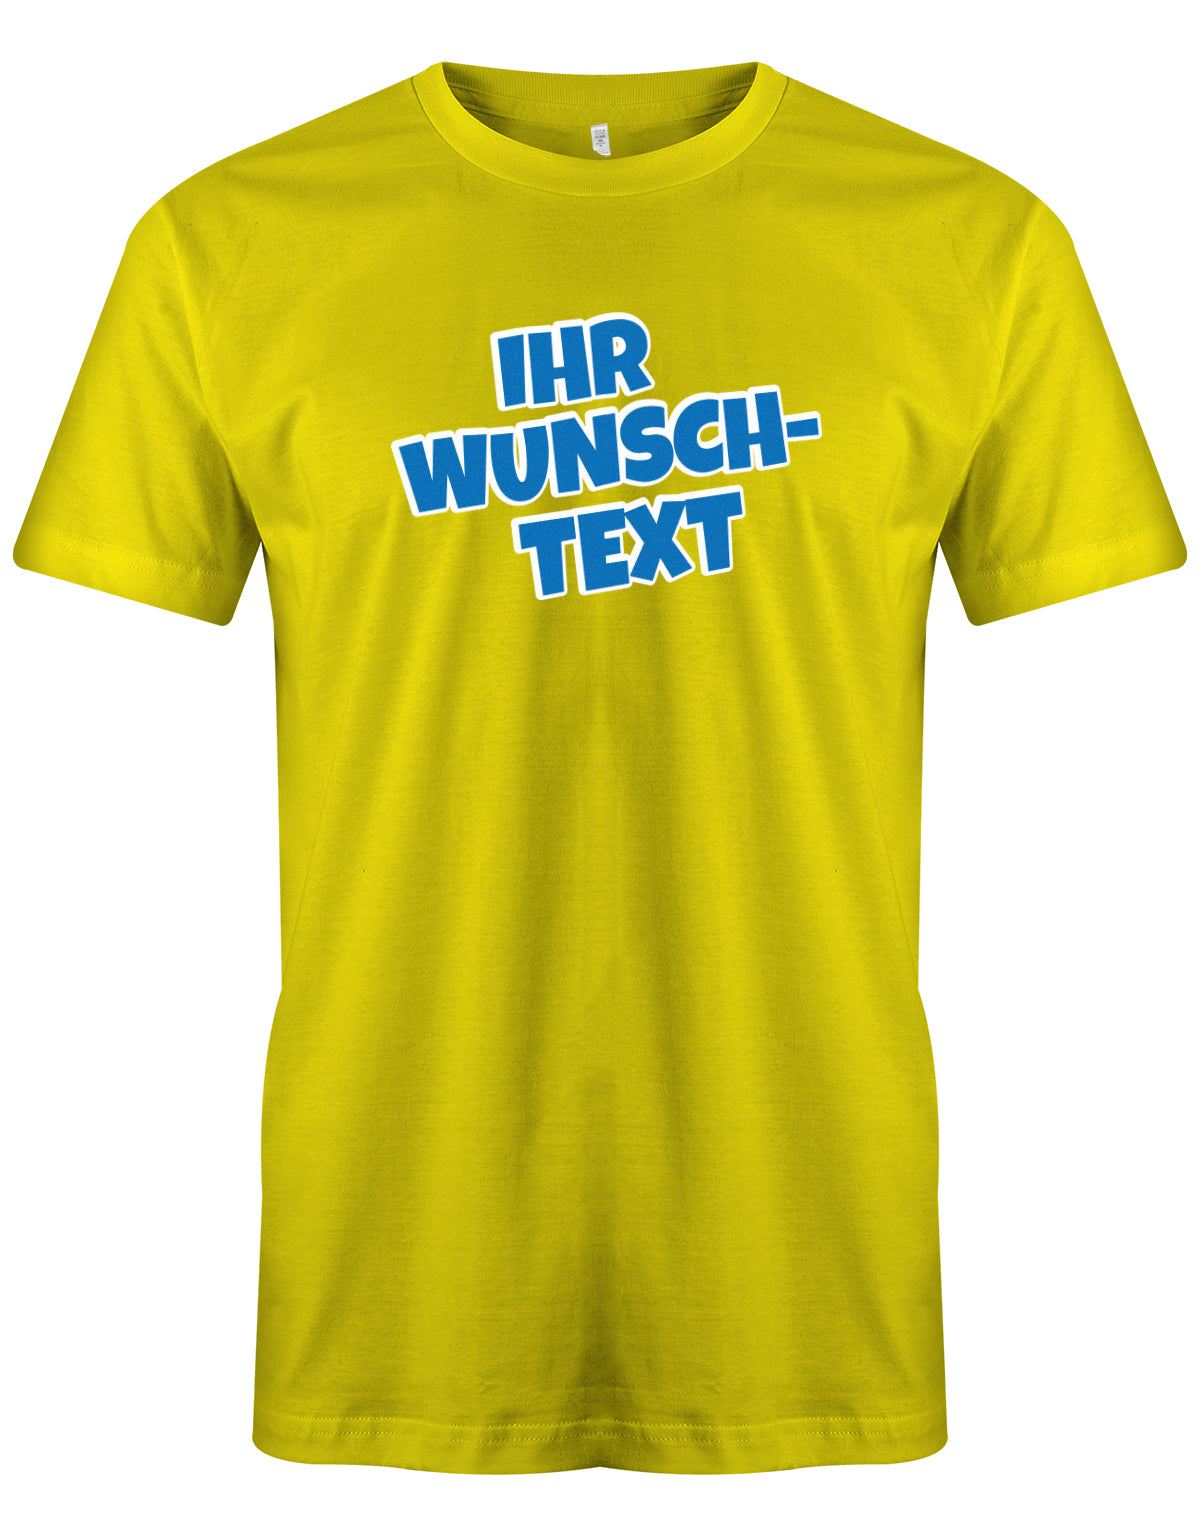 Männer Tshirt mit Wunschtext. Comic Design mit weißer Umrandung. Gelb